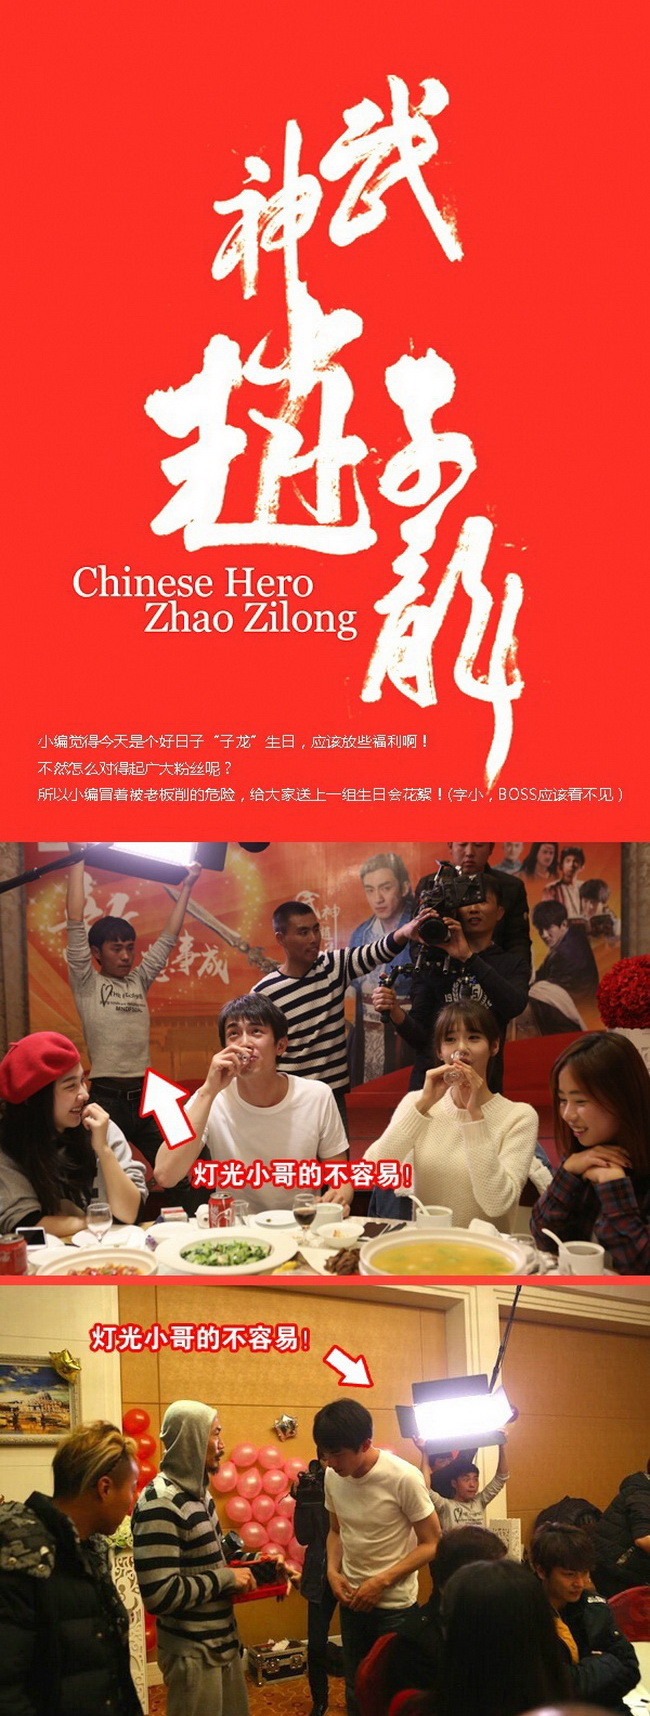 ประเด็นฮ็อต! ในโซเชียลจีน ภาพสนิทสนม ยุนอาและพระเอกจีน